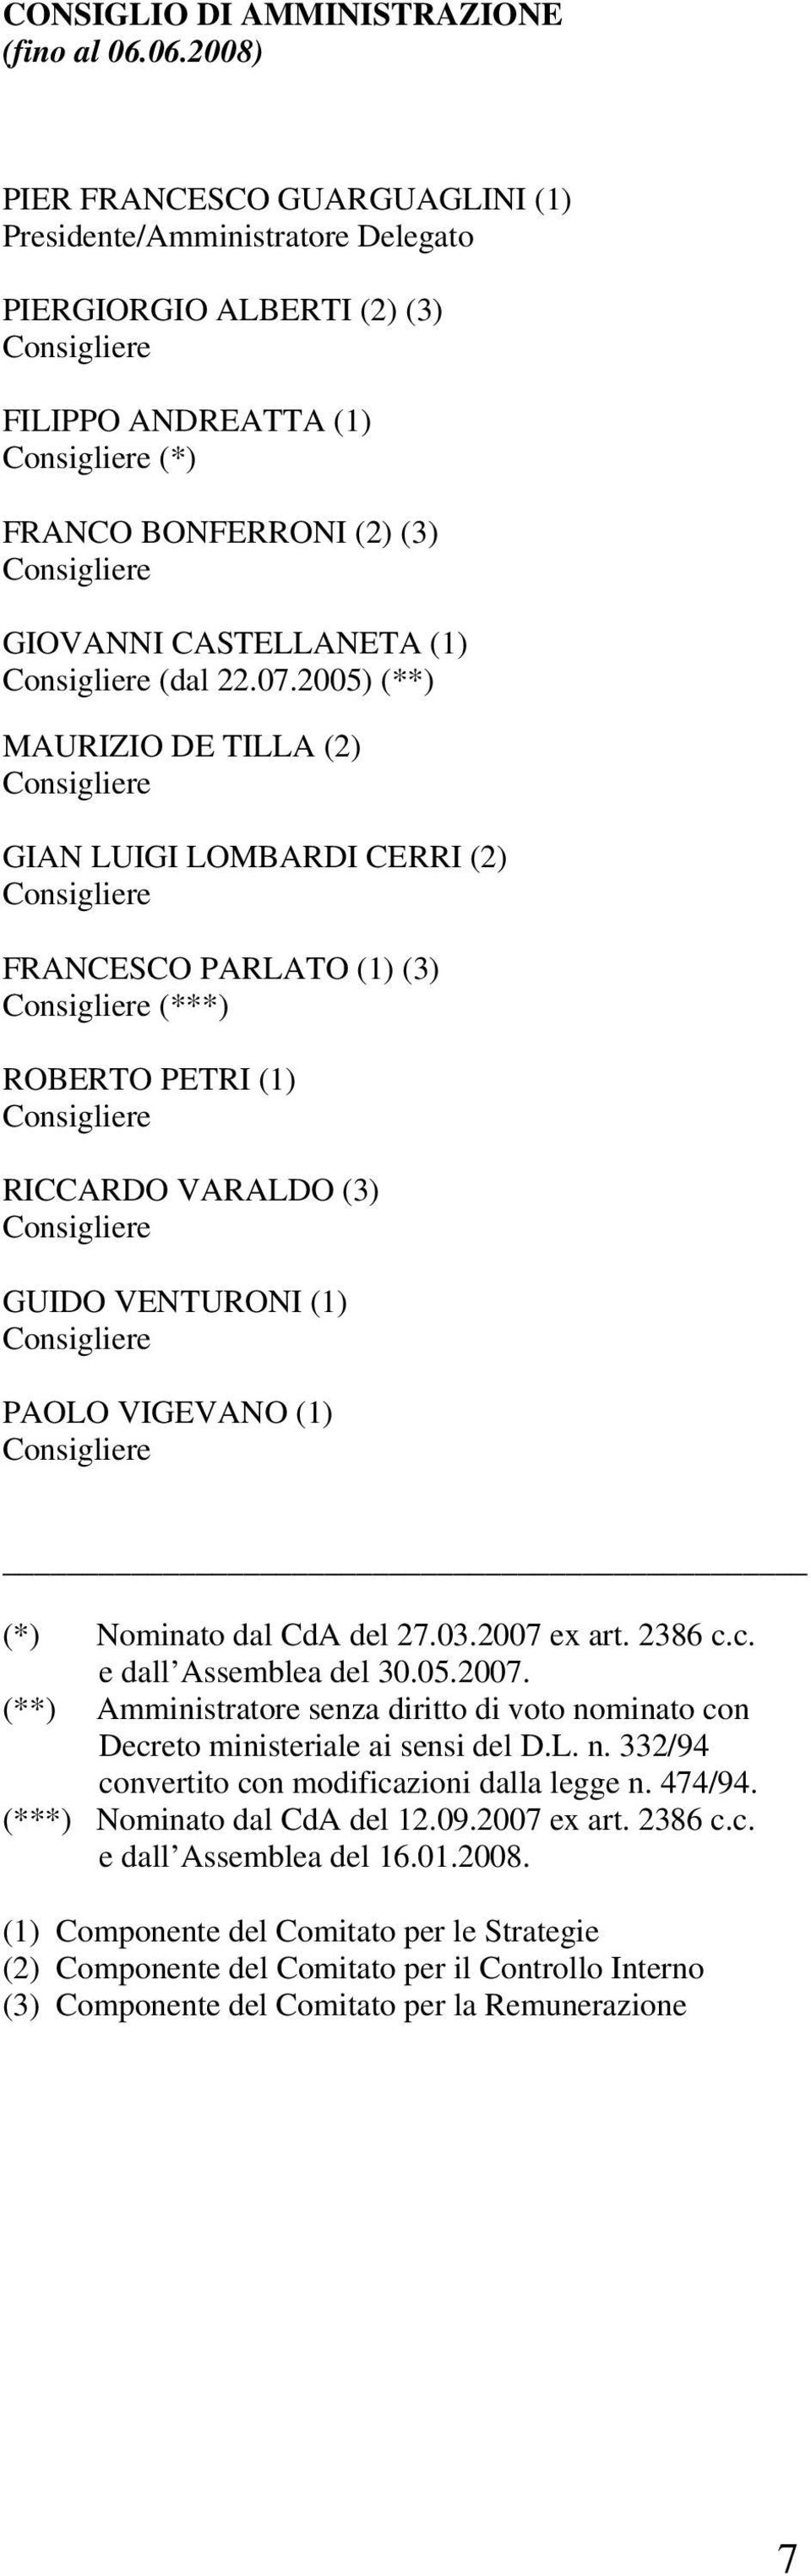 GIOVANNI CASTELLANETA (1) Consigliere (dal 22.07.